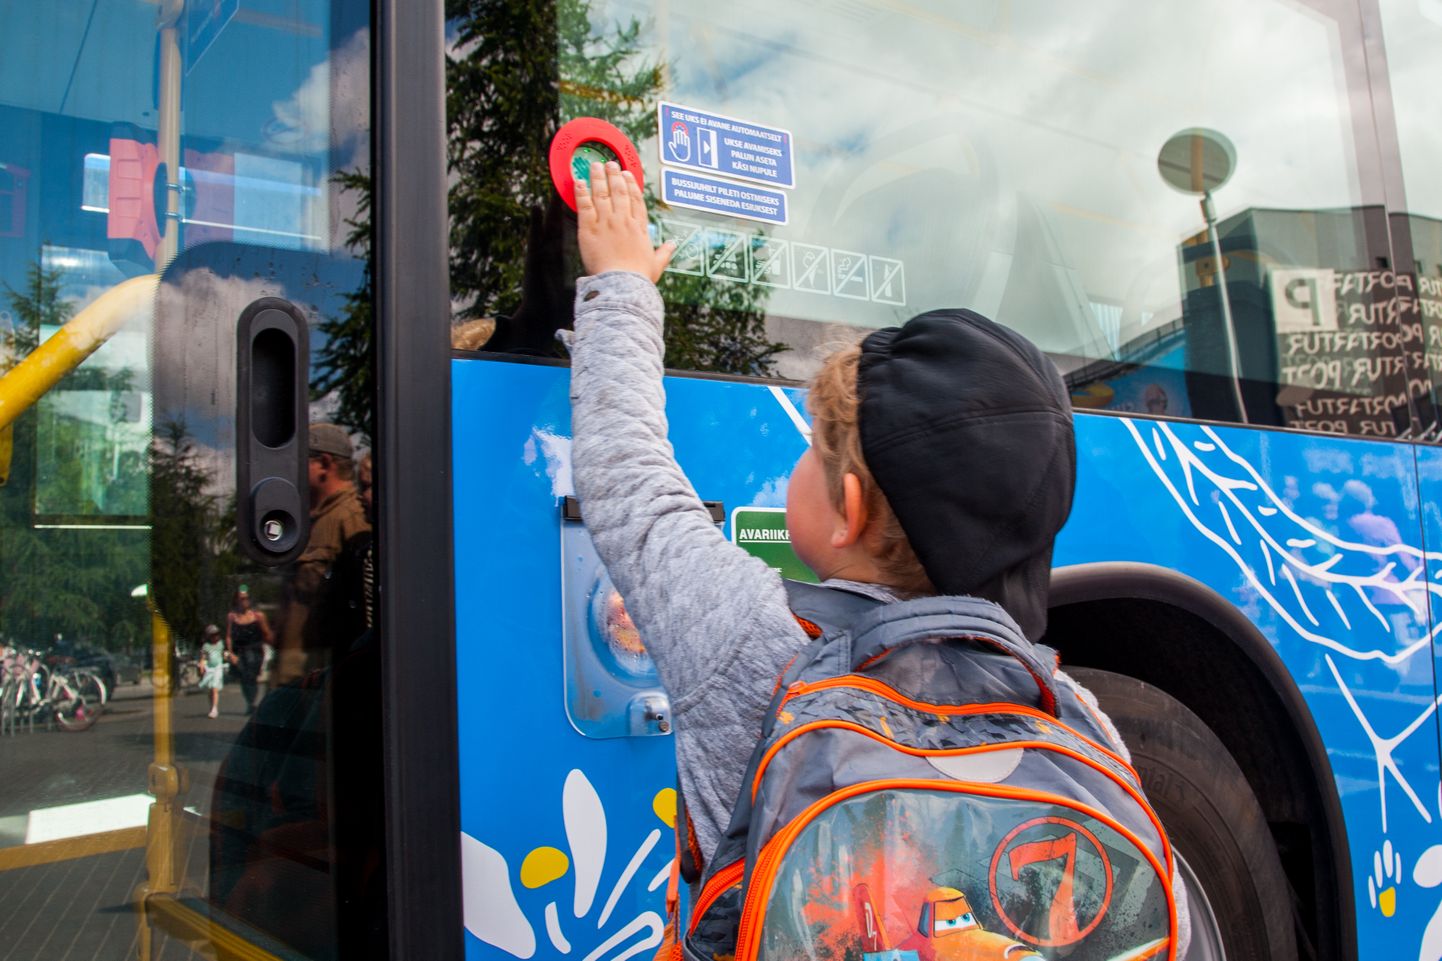 Pärnu linnavalitsus otsustas, et ühistranspordi kasutajatele võimaldatakse kõigis Pärnu linnabussides tasuta sõit 23. ja 24 veebruaril.  Foto on illustreeriv.